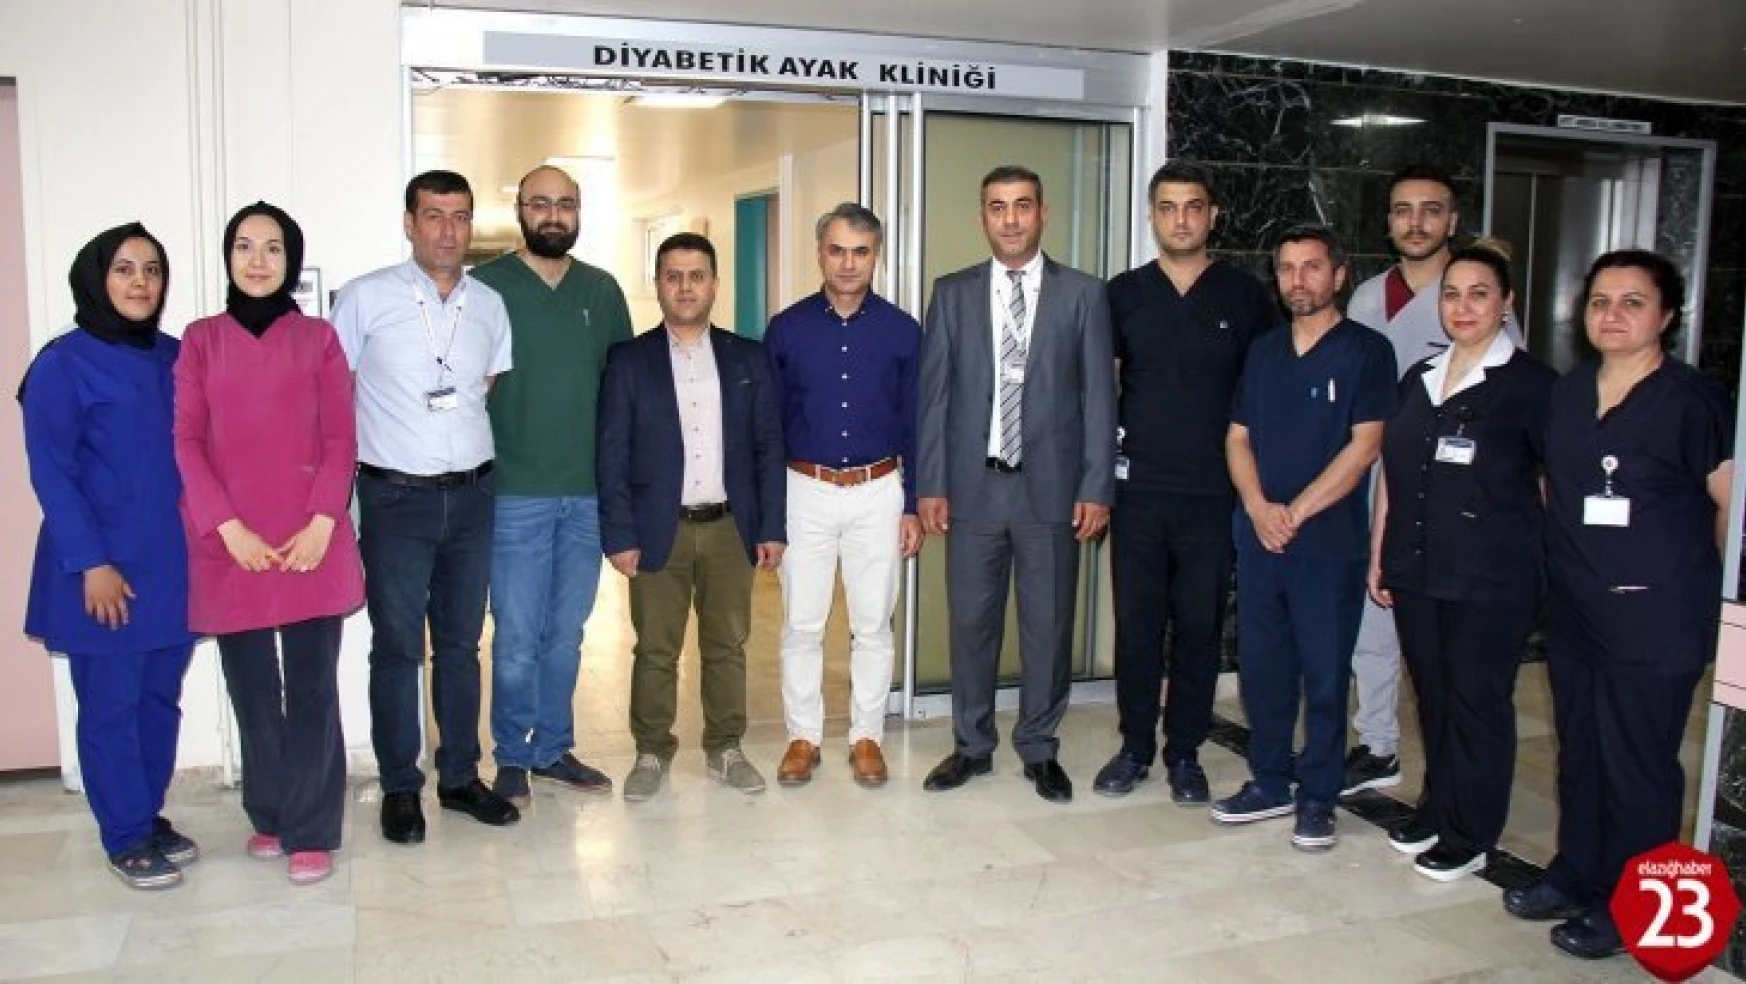 Fırat Üniversitesi Hastanesinde Diyabetik Ayak Kliniği Açıldı